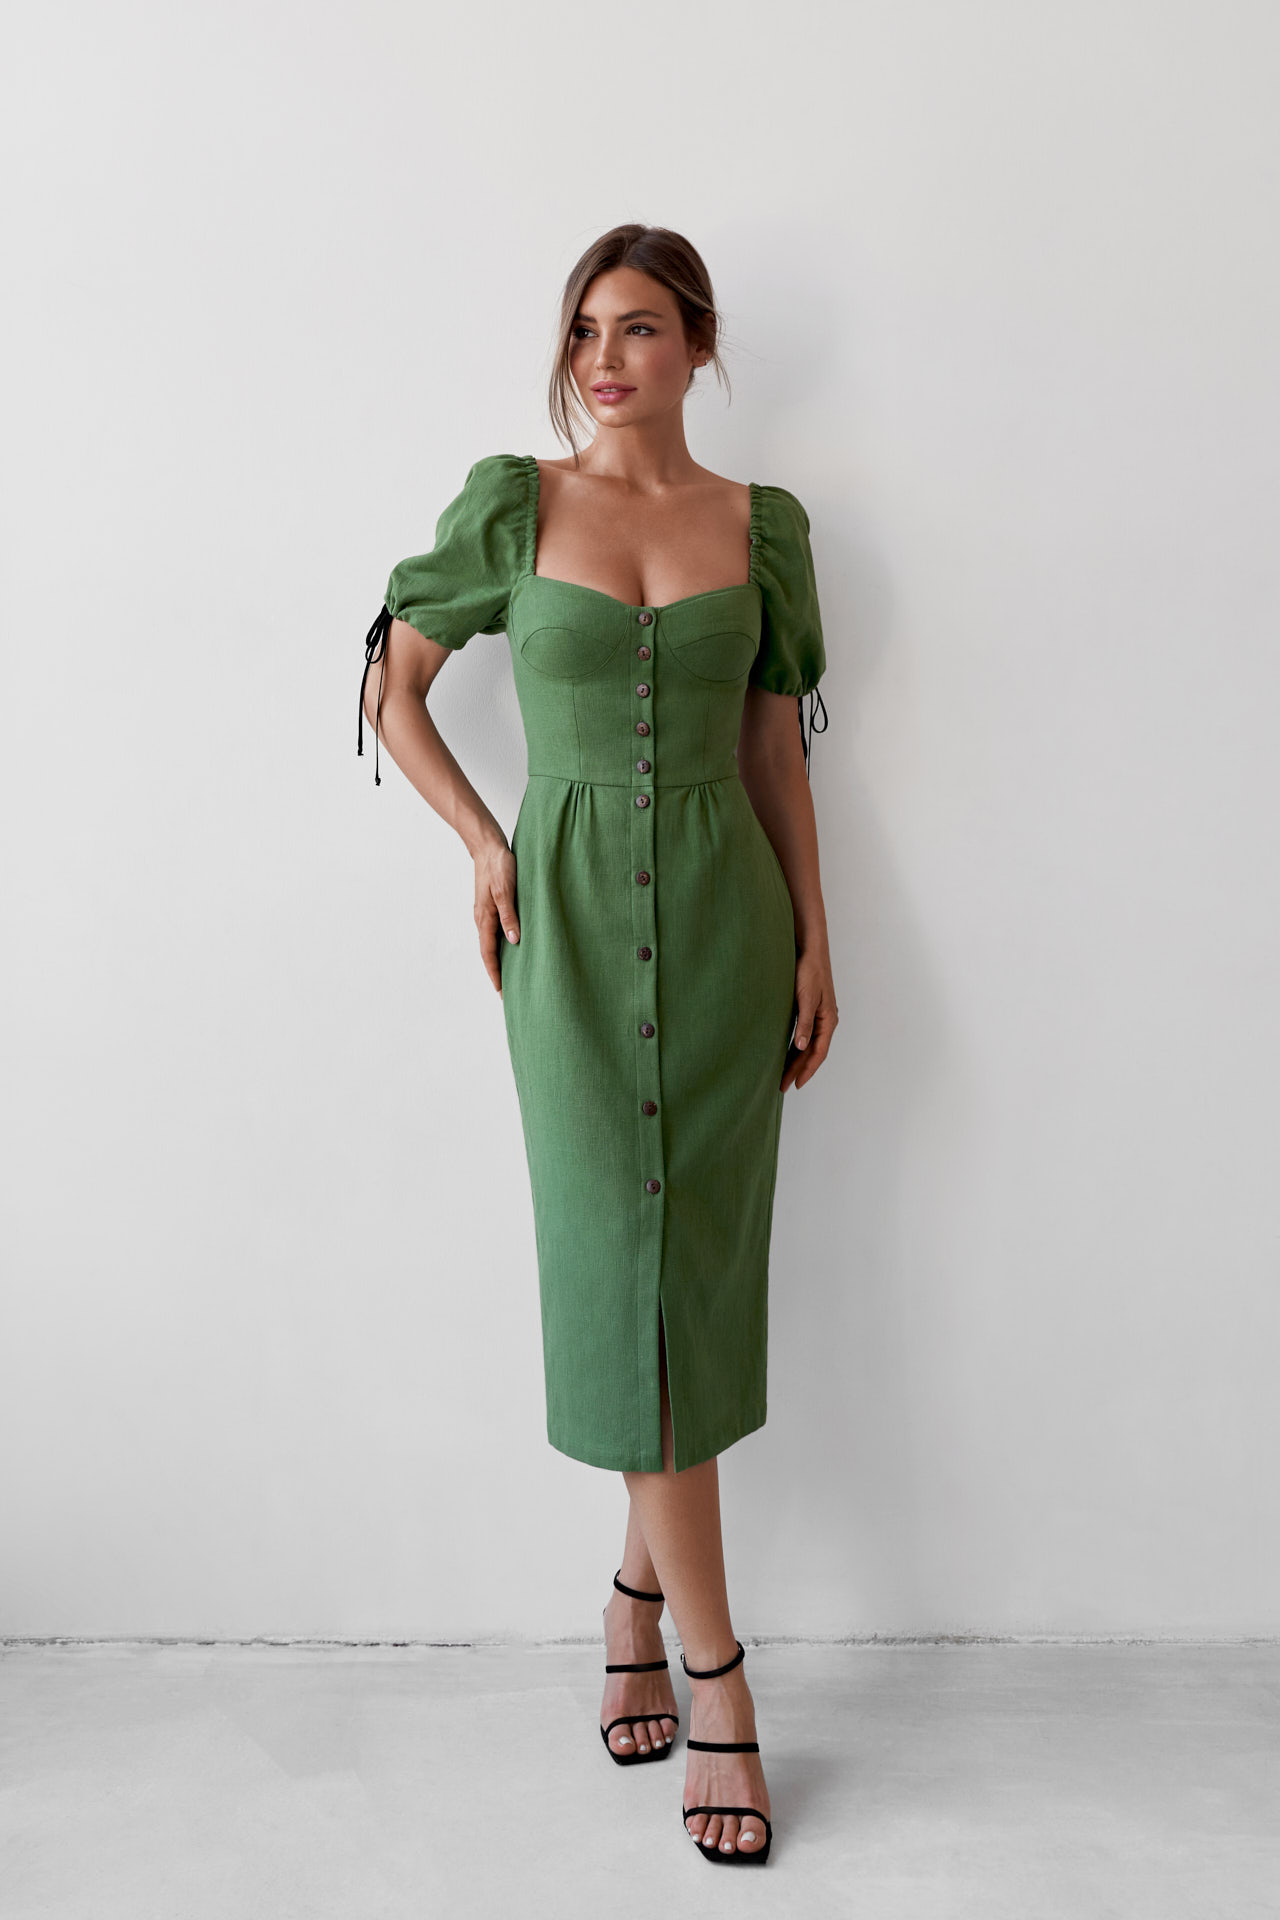 Платье-бюстье на пуговицах изо льна в зеленом оттенке